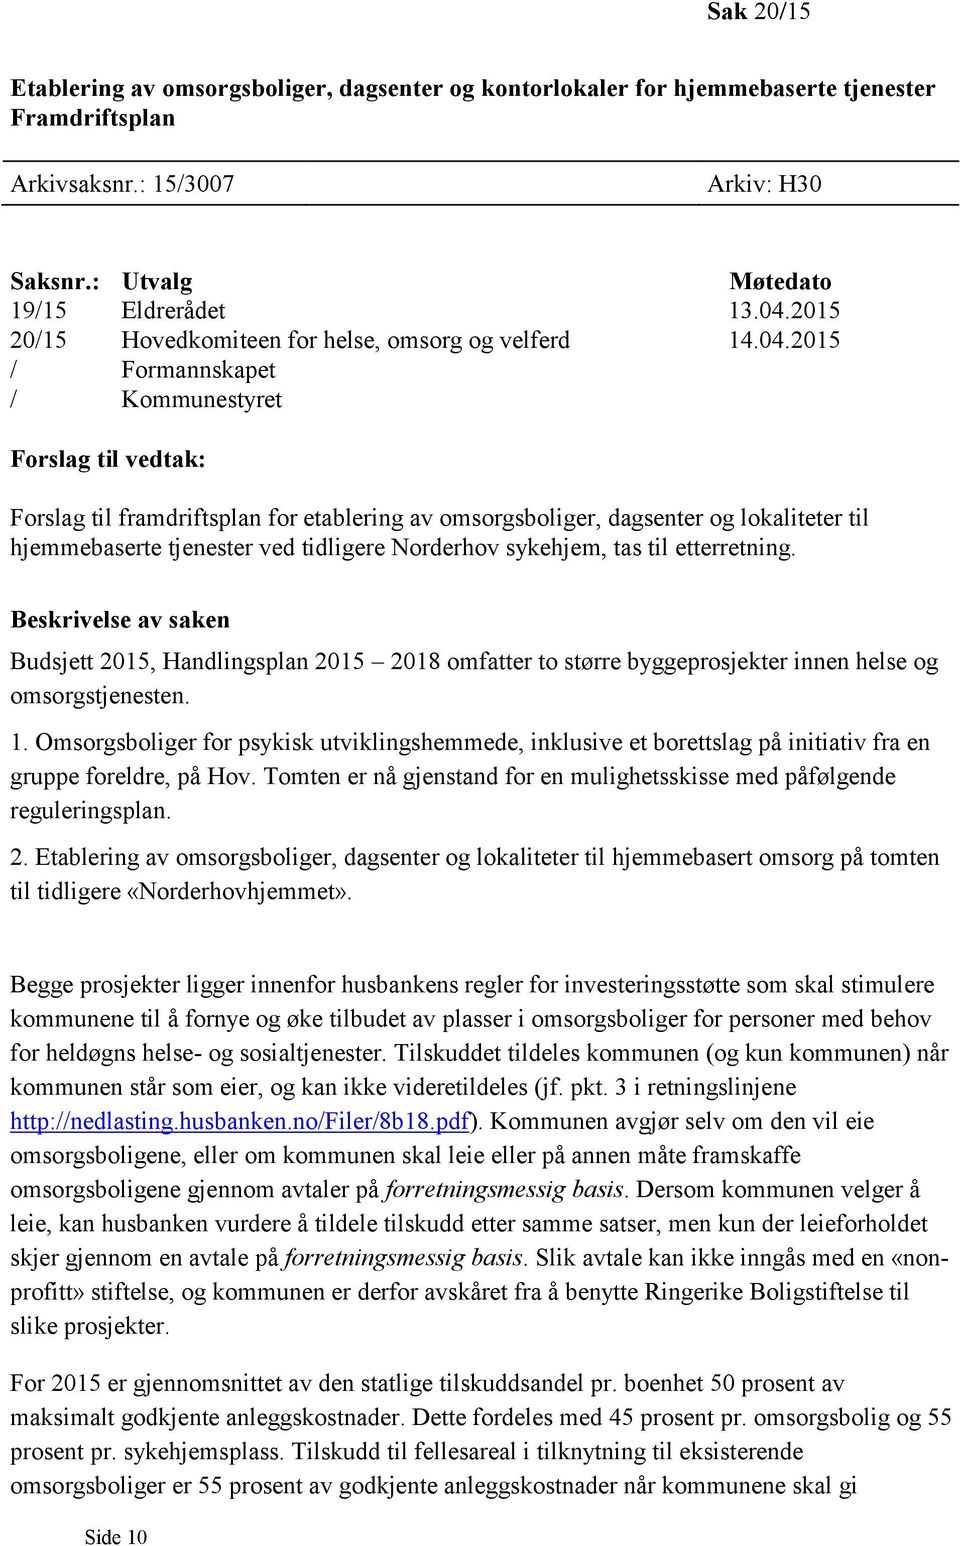 2015 / Formannskapet / Kommunestyret Forslag til vedtak: Forslag til framdriftsplan for etablering av omsorgsboliger, dagsenter og lokaliteter til hjemmebaserte tjenester ved tidligere Norderhov